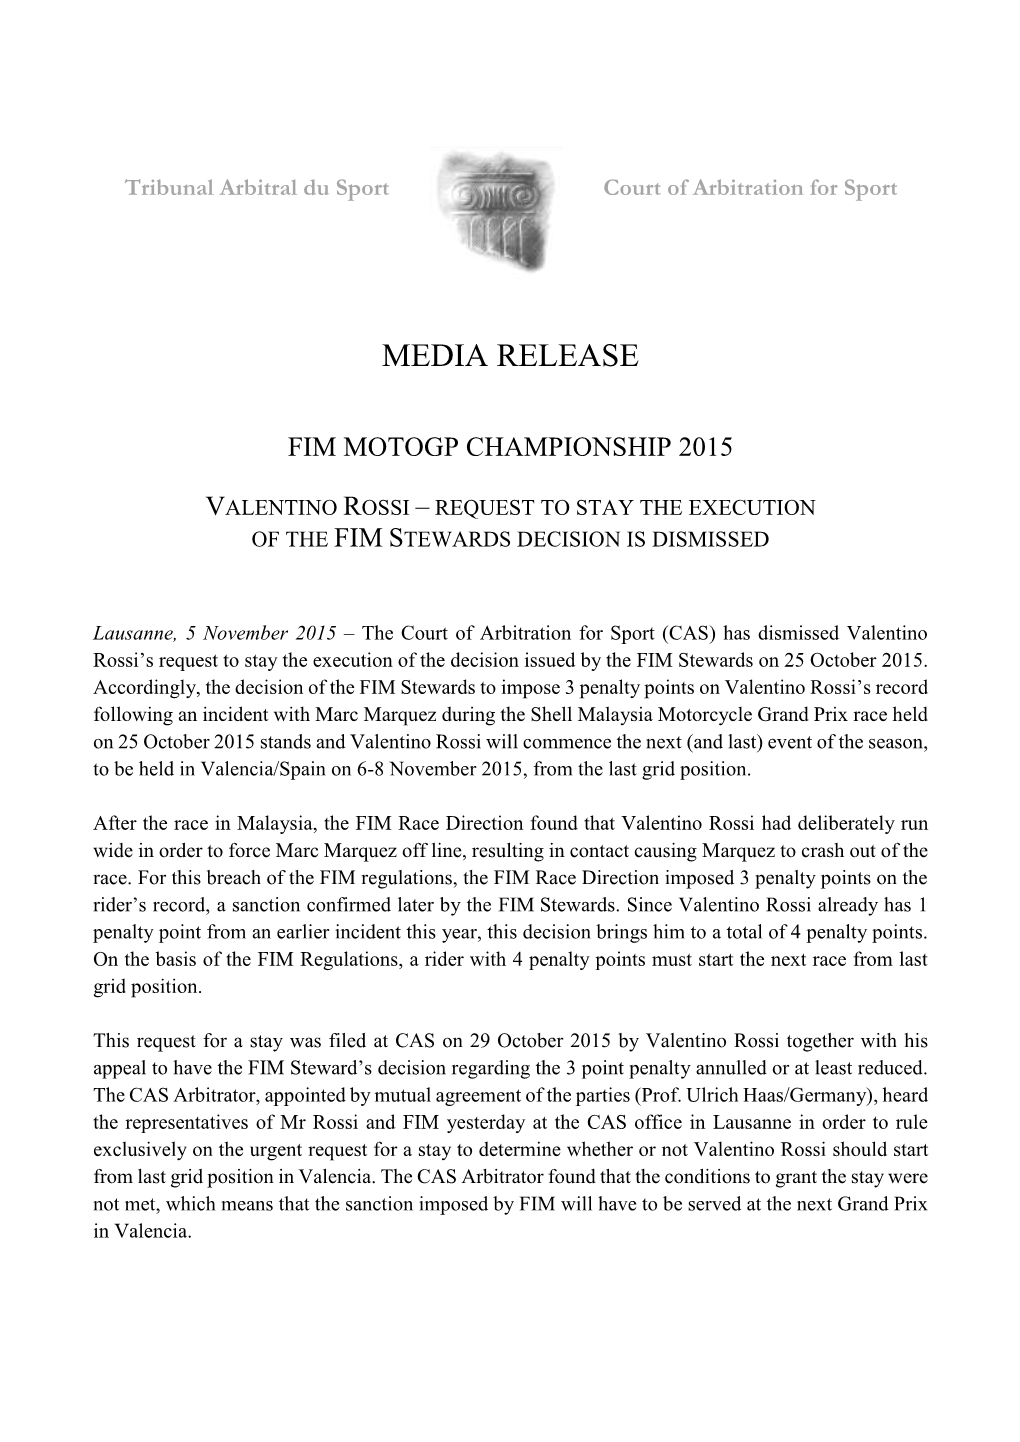 Fim Motogp Championship 2015 Valentino Rossi